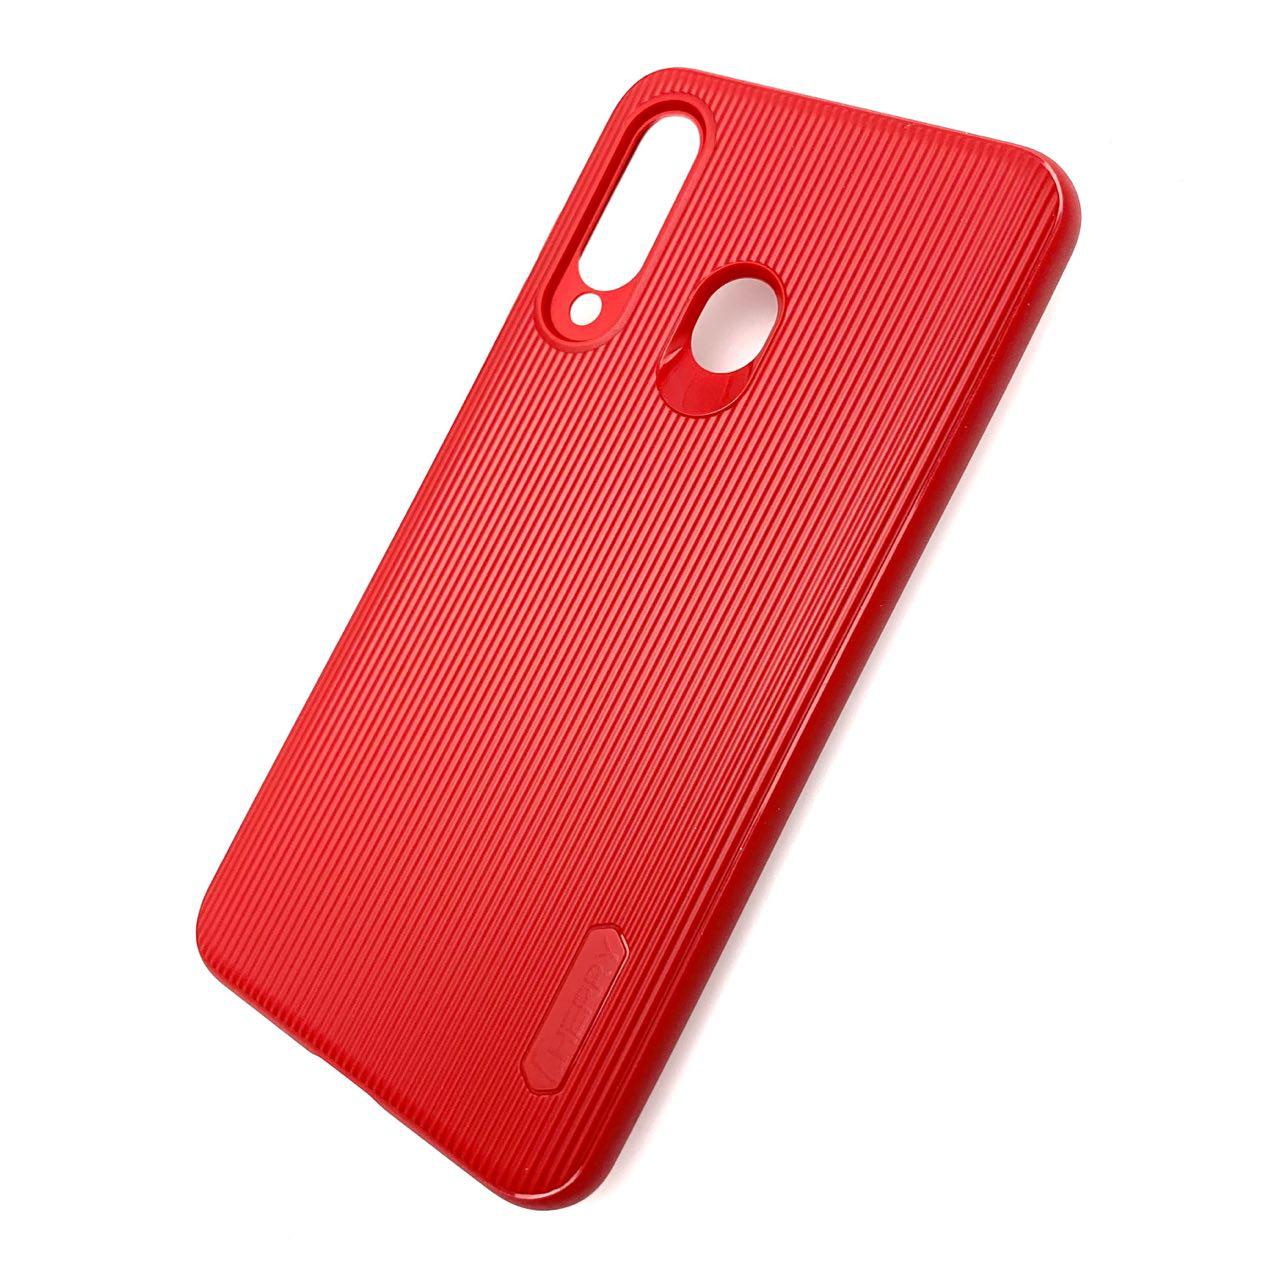 Чехол накладка Cherry для SAMSUNG Galaxy A60 2019 (SM-A605), Galaxy M40 (SM-M405), силикон, полоски, цвет темно красный.